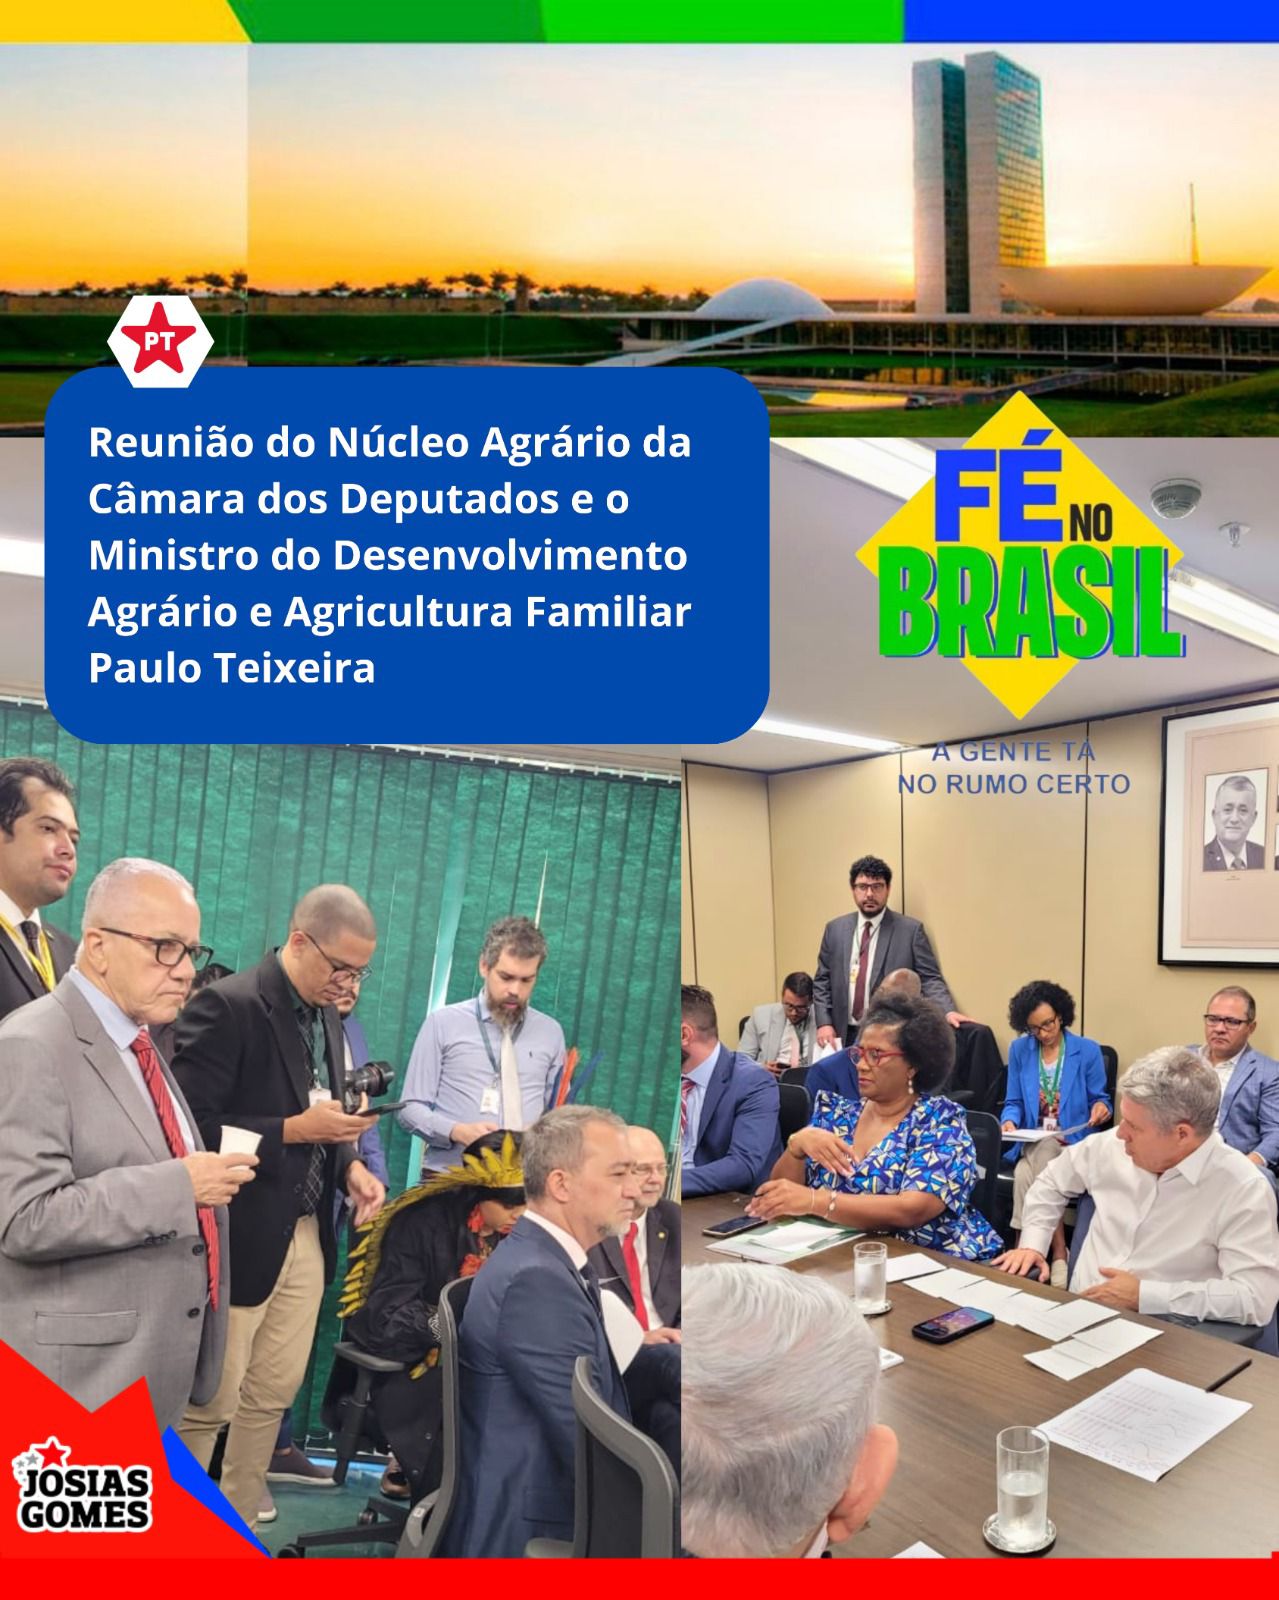 Ministro Do Desenvolvimento Agrário E Agricultura Familiar, Paulo Teixeira, Apresenta O Plano “prateleira De Terras” Que Visa Acelerar A Reforma Agrária No Brasil